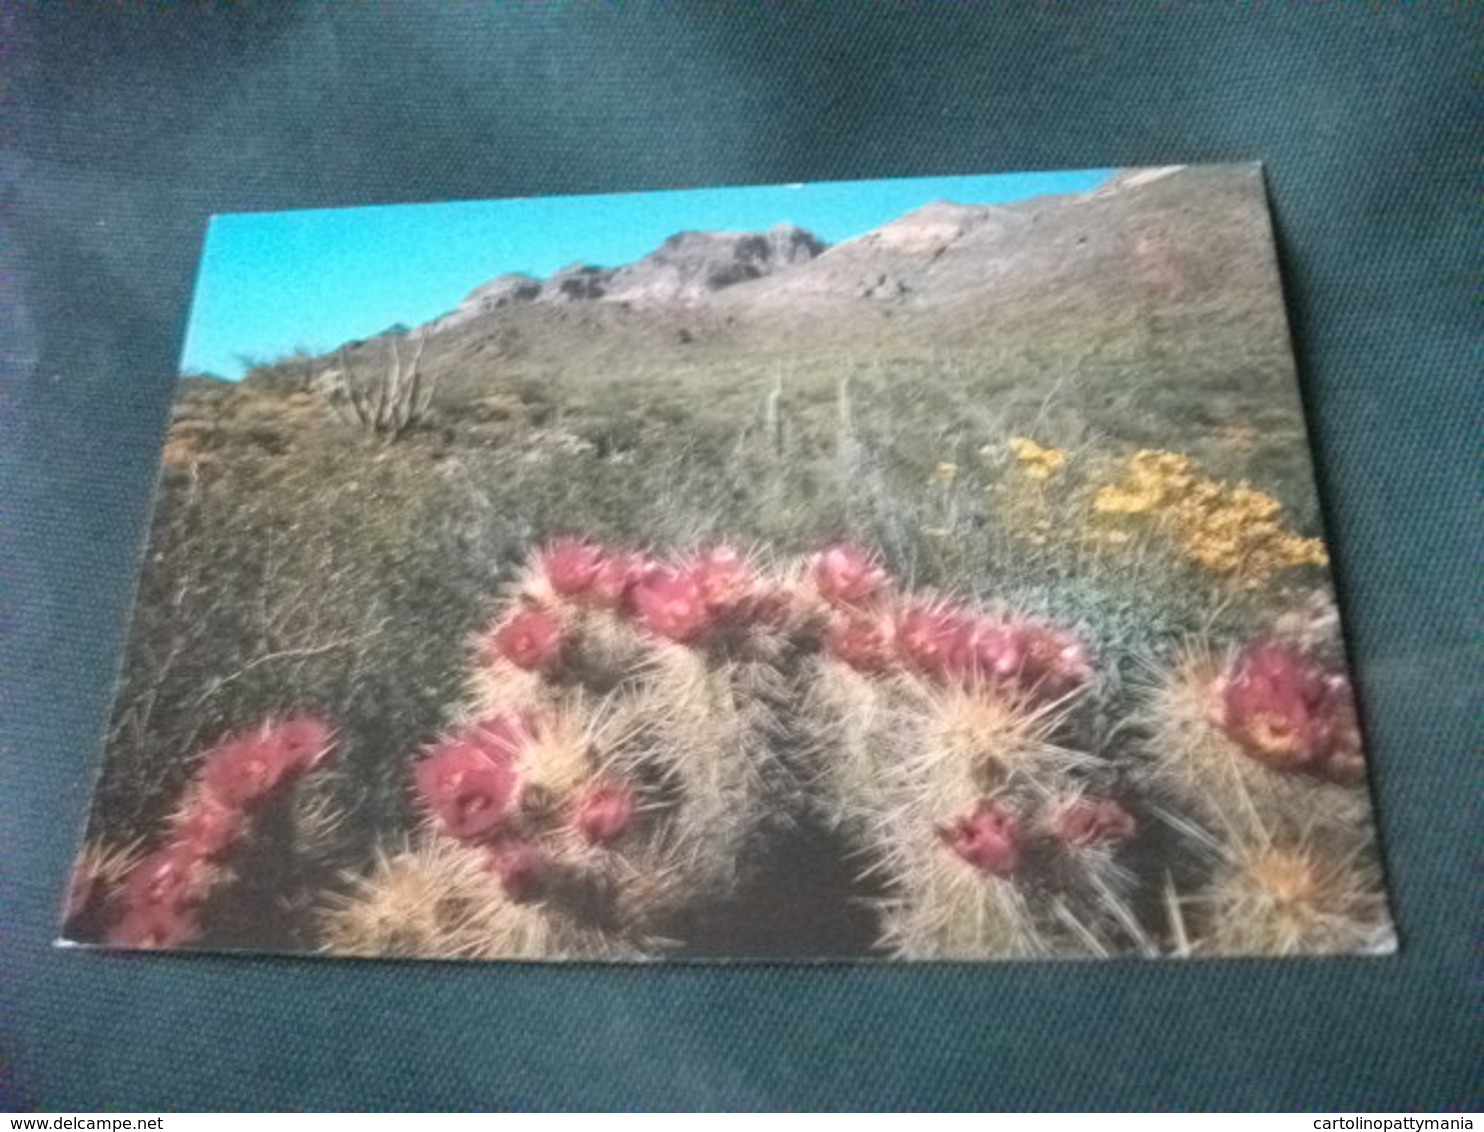 PIANTA GRASSA CACTUS HEDGEHOG ECHINOCEREUS ENGLEMANNII DESERT IN BLOOM ARIZONA U.S.A. - Cactus